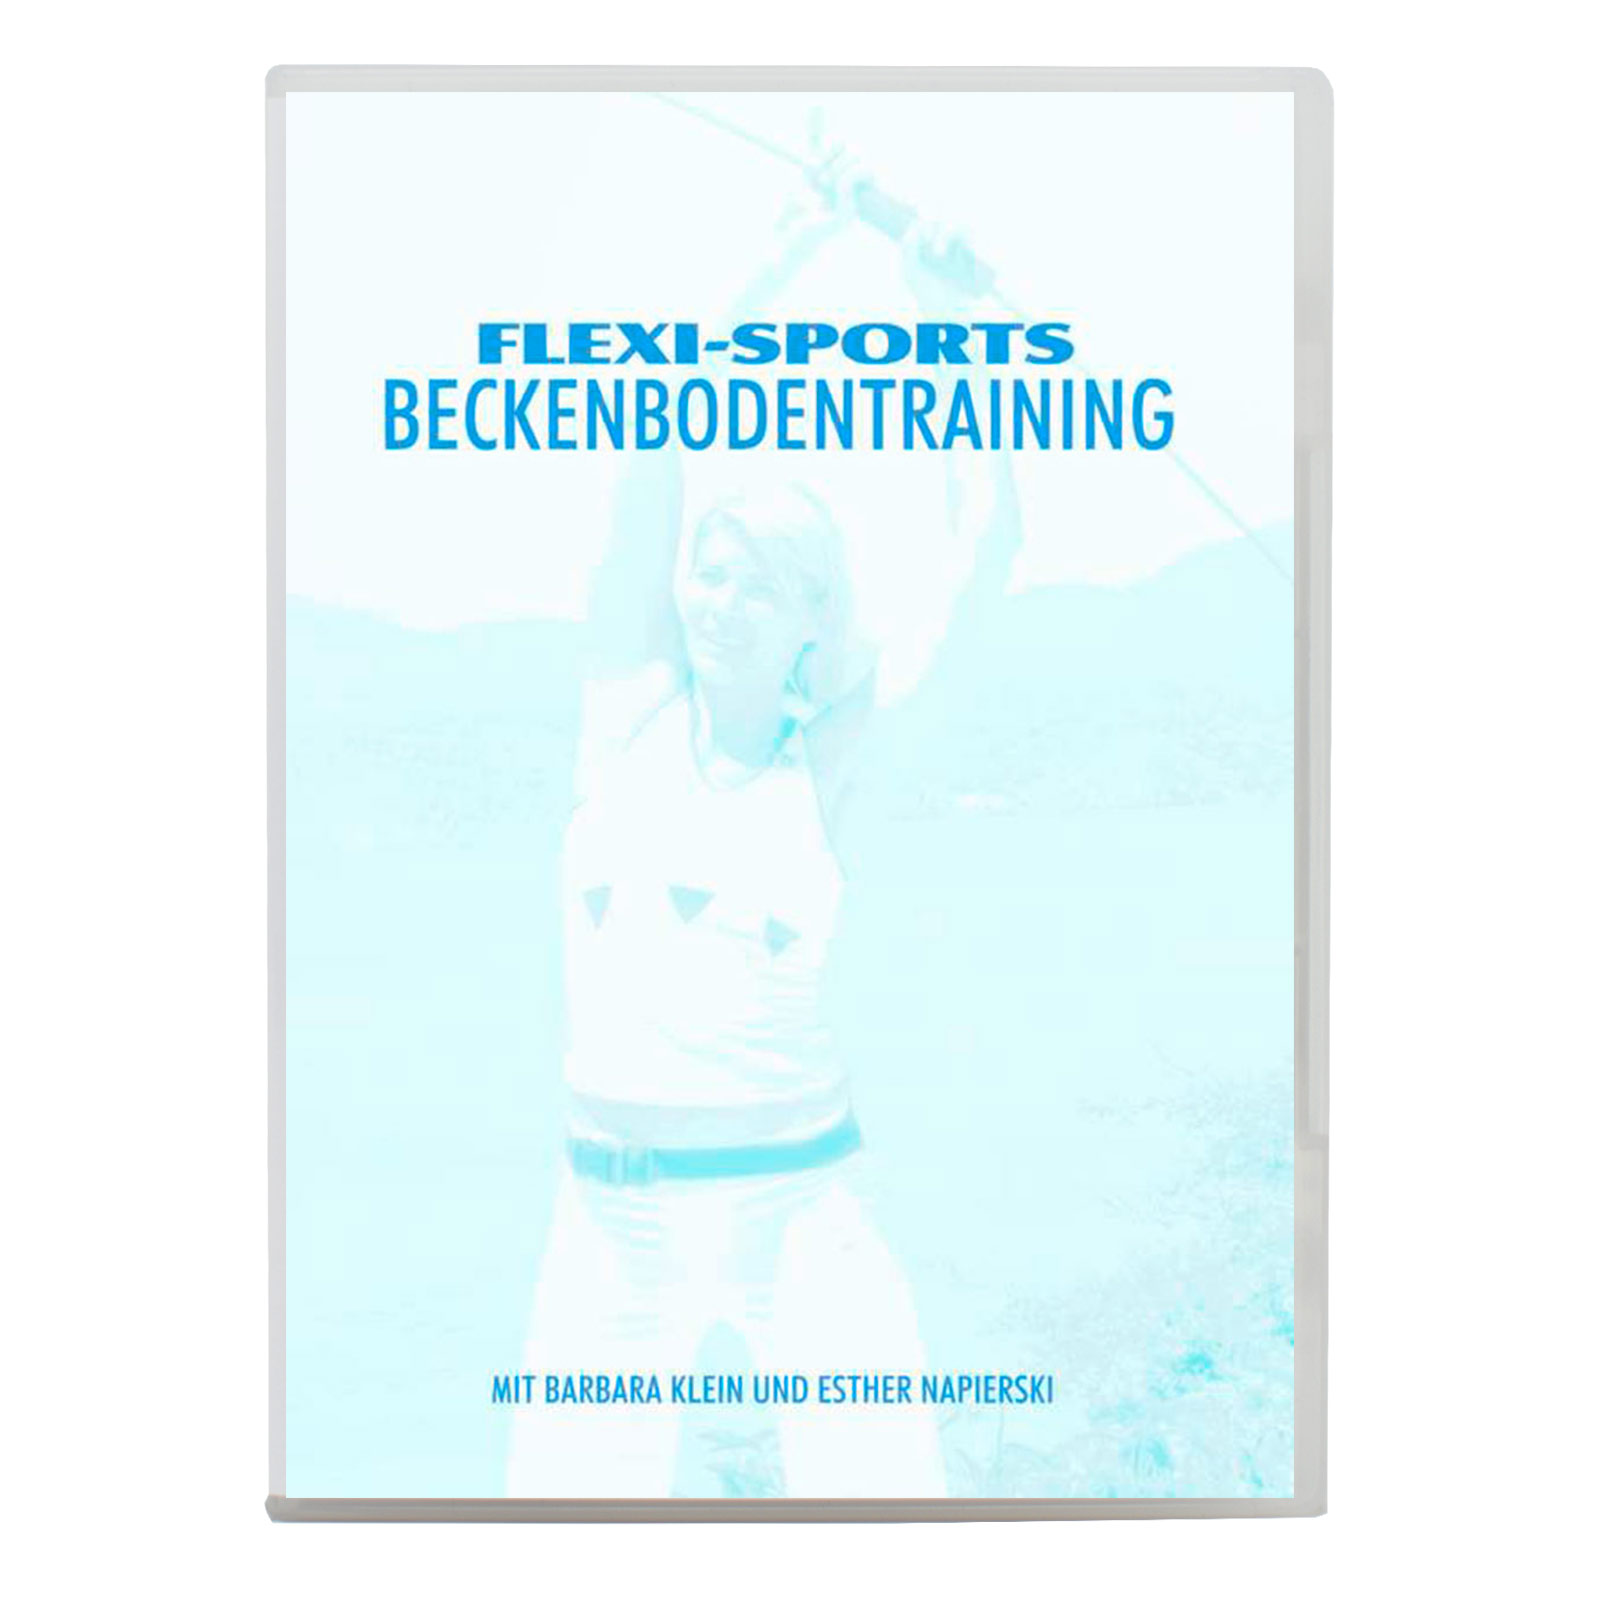 Flexi-Sports Beckenbodentraining DVD Produktbild Frontansicht